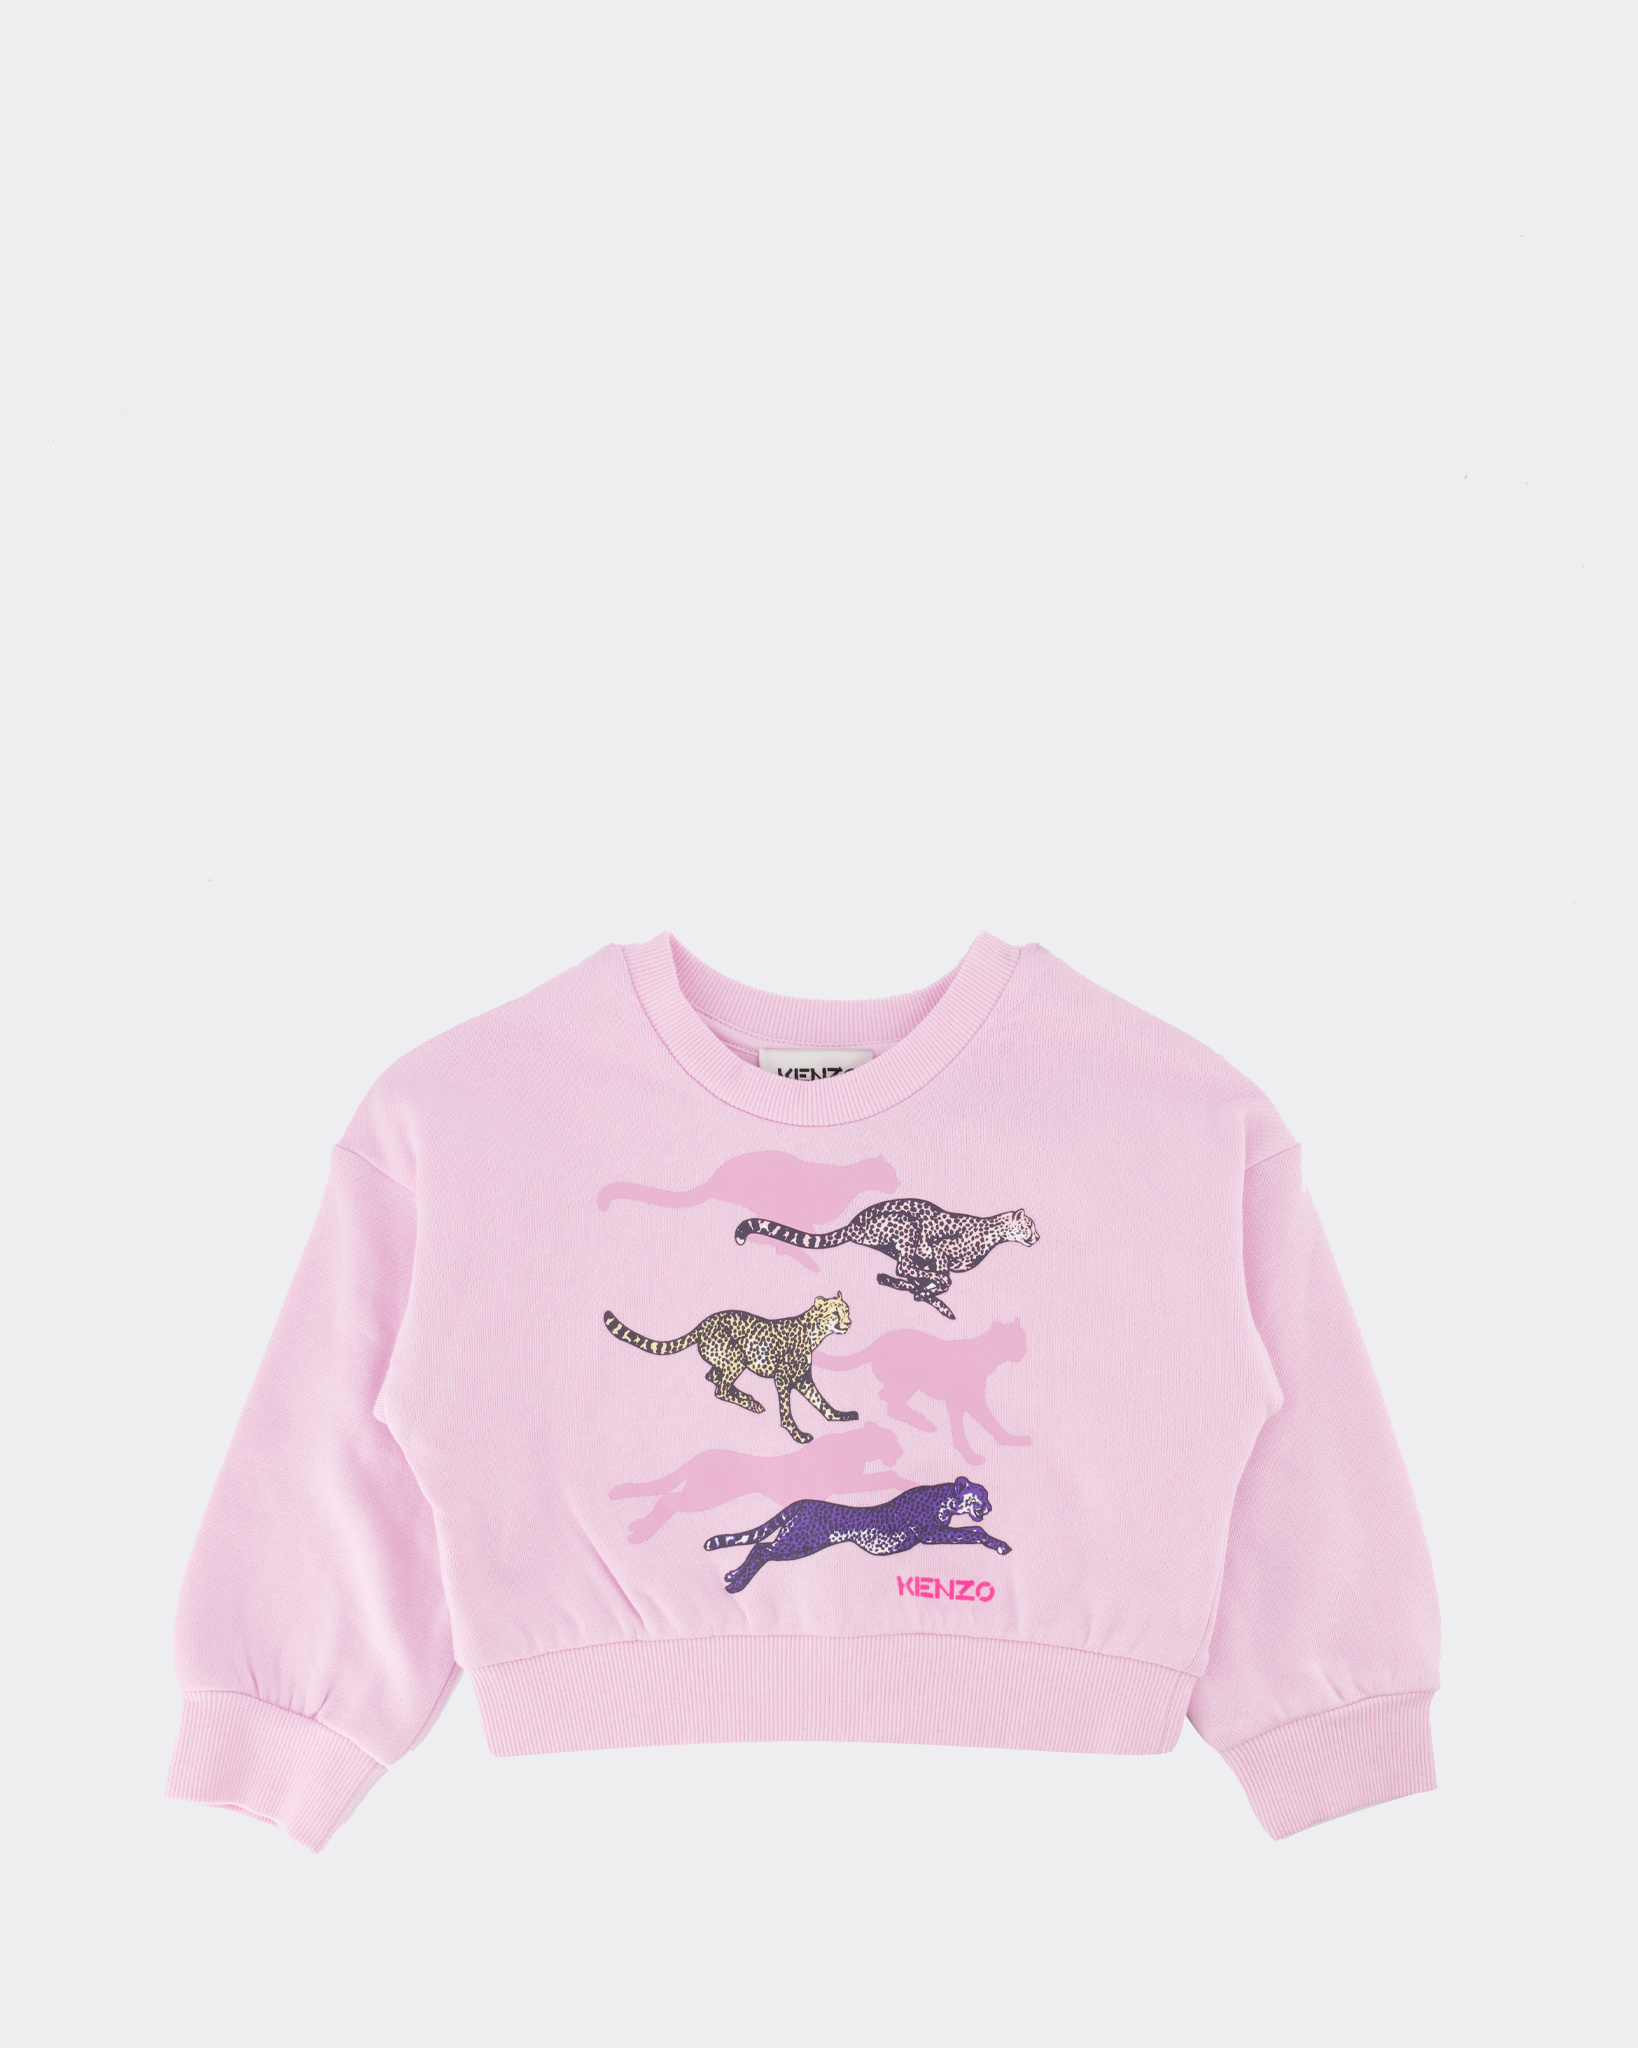 Niet meer geldig bloem versus Kenzo Kids Cheetah Sweater Roze - Beachim